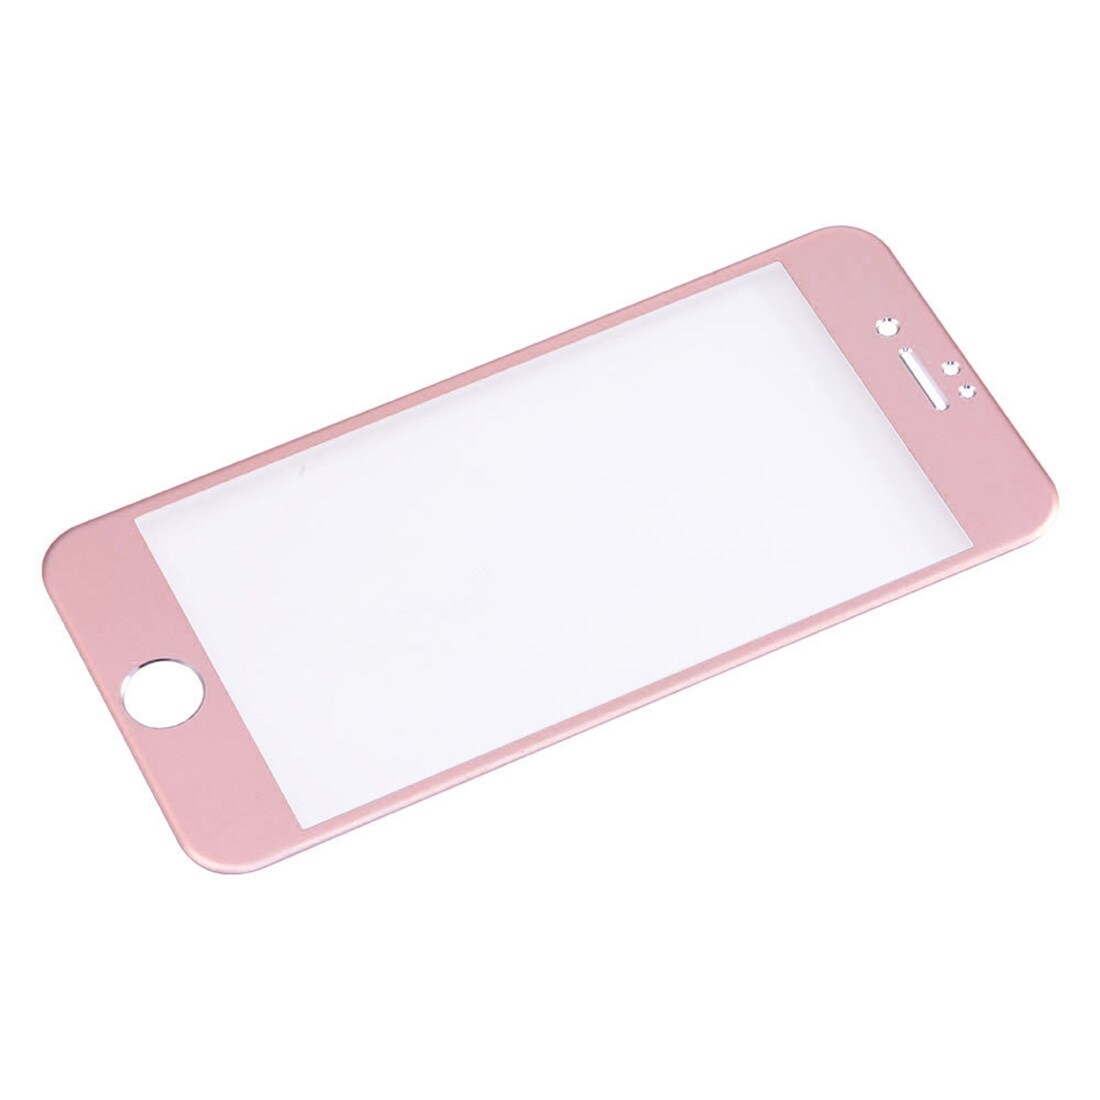 Bøyd herdet fullskjermbeskyttelse av glass til iPhone 7 Plus - Rosegull